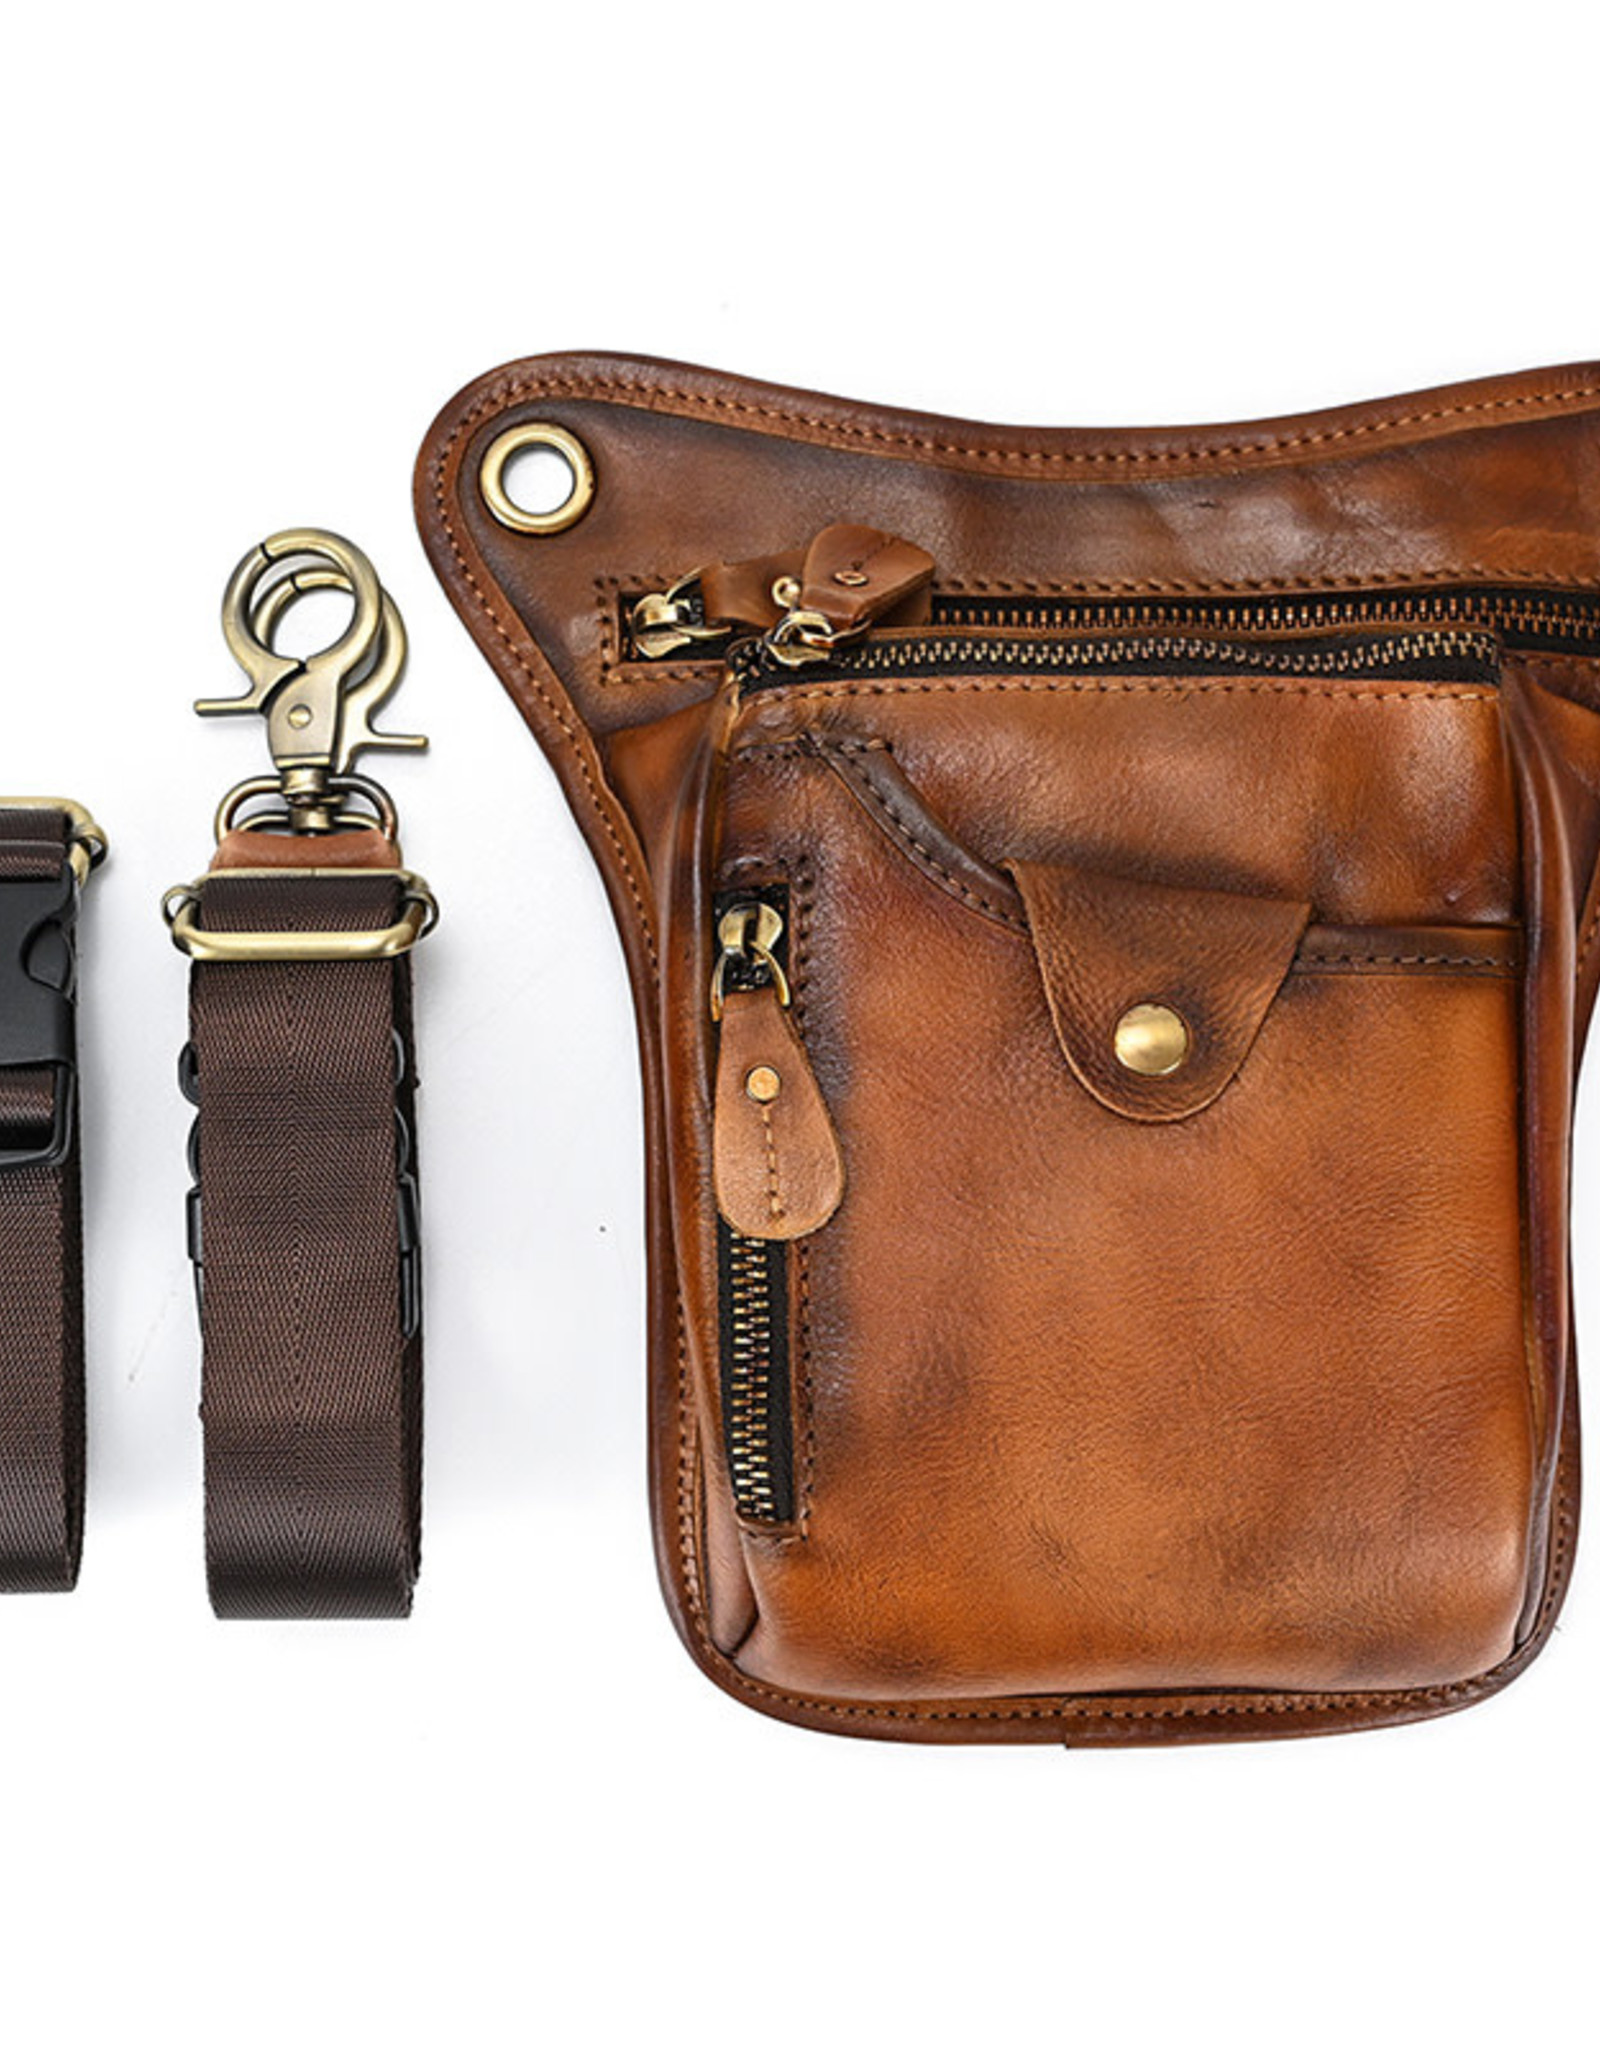 Dominic Waist & Shoulder Bag Genuine Leather